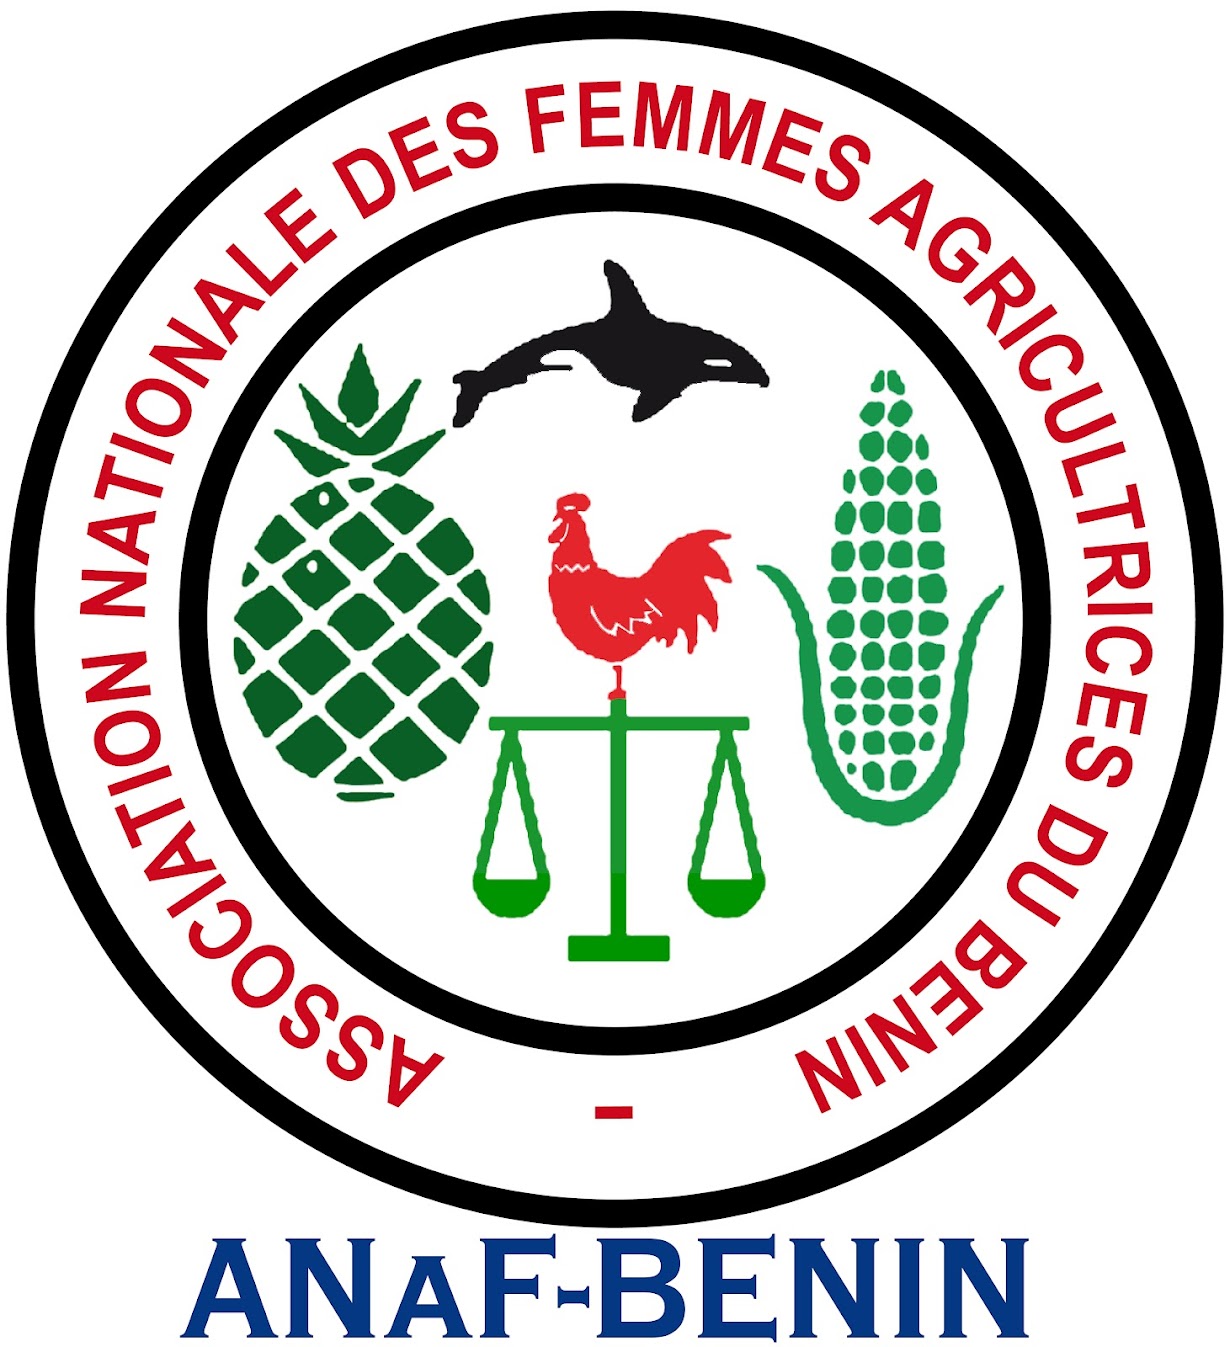 ASSOCIATION NATIONALE DES FEMMES AGRICULTRICES DU BENIN (ANaF-BENIN)